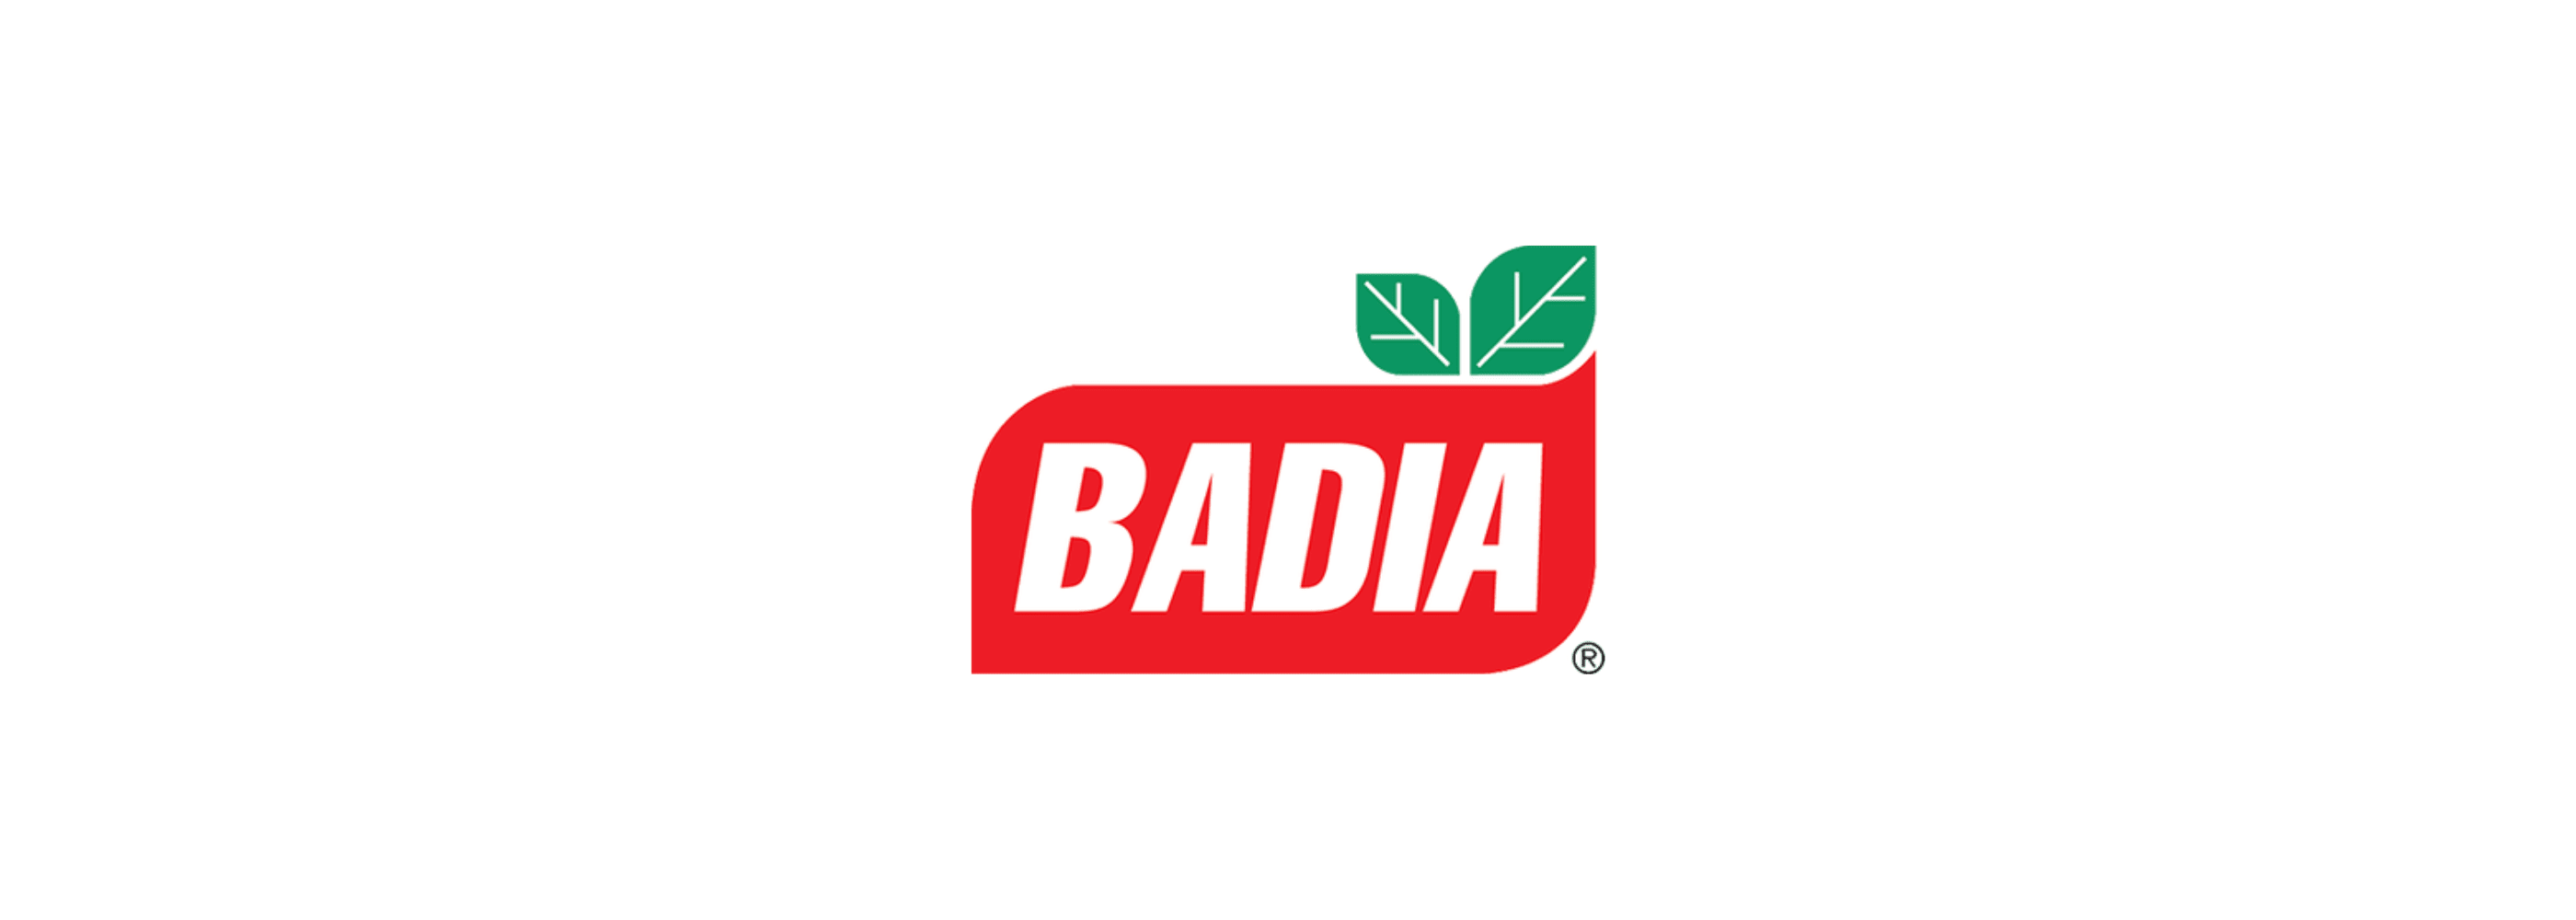 Badia  Supermarket Italy